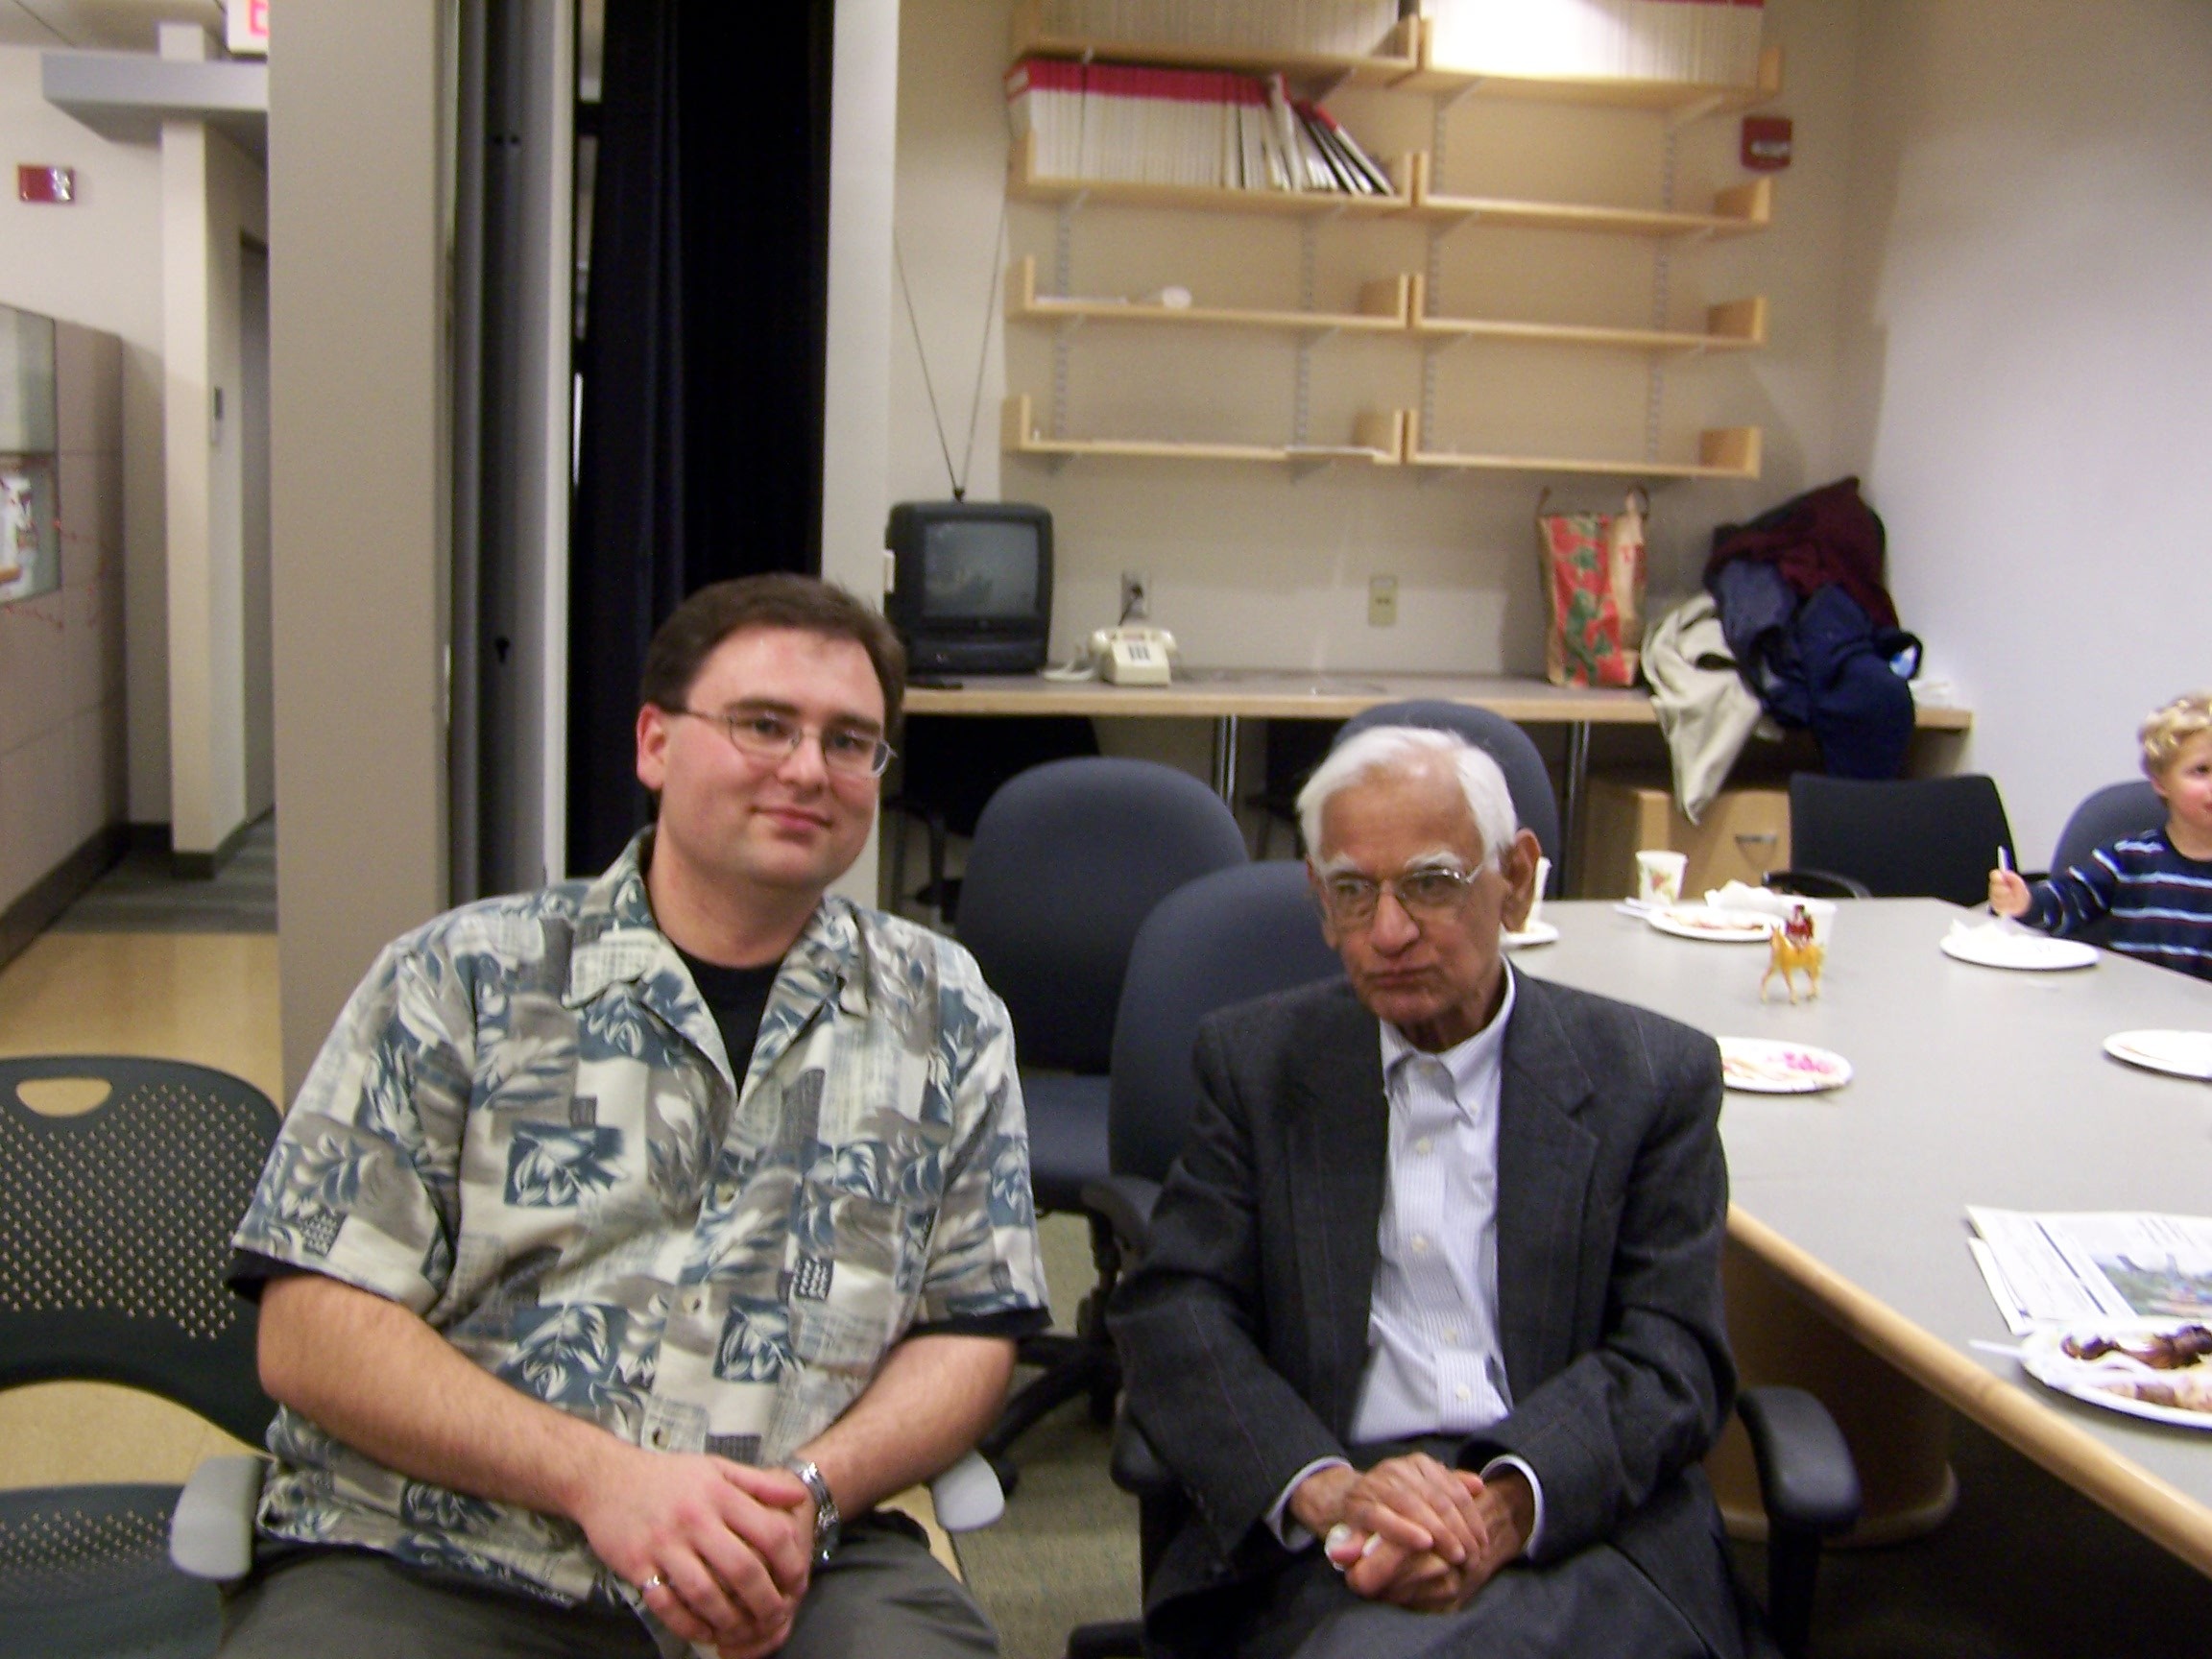 Goband Khorana (Nobel Prize '68) and I, MIT 2007